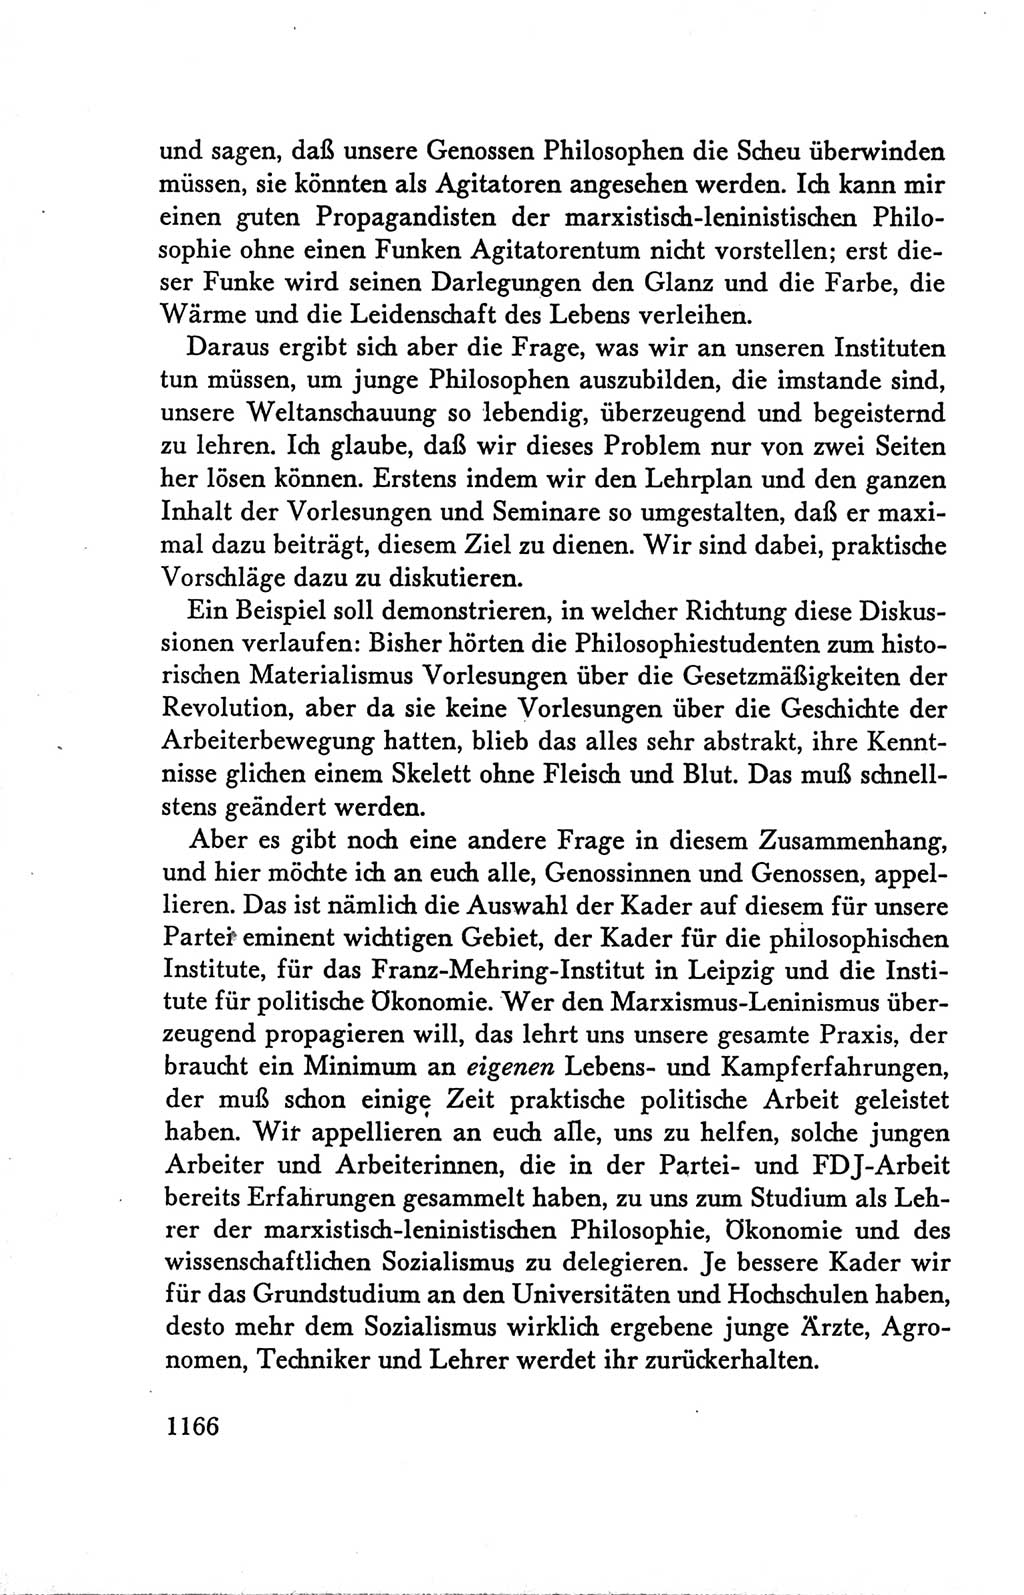 Protokoll der Verhandlungen des Ⅴ. Parteitages der Sozialistischen Einheitspartei Deutschlands (SED) [Deutsche Demokratische Republik (DDR)] 1958, Seite 1166